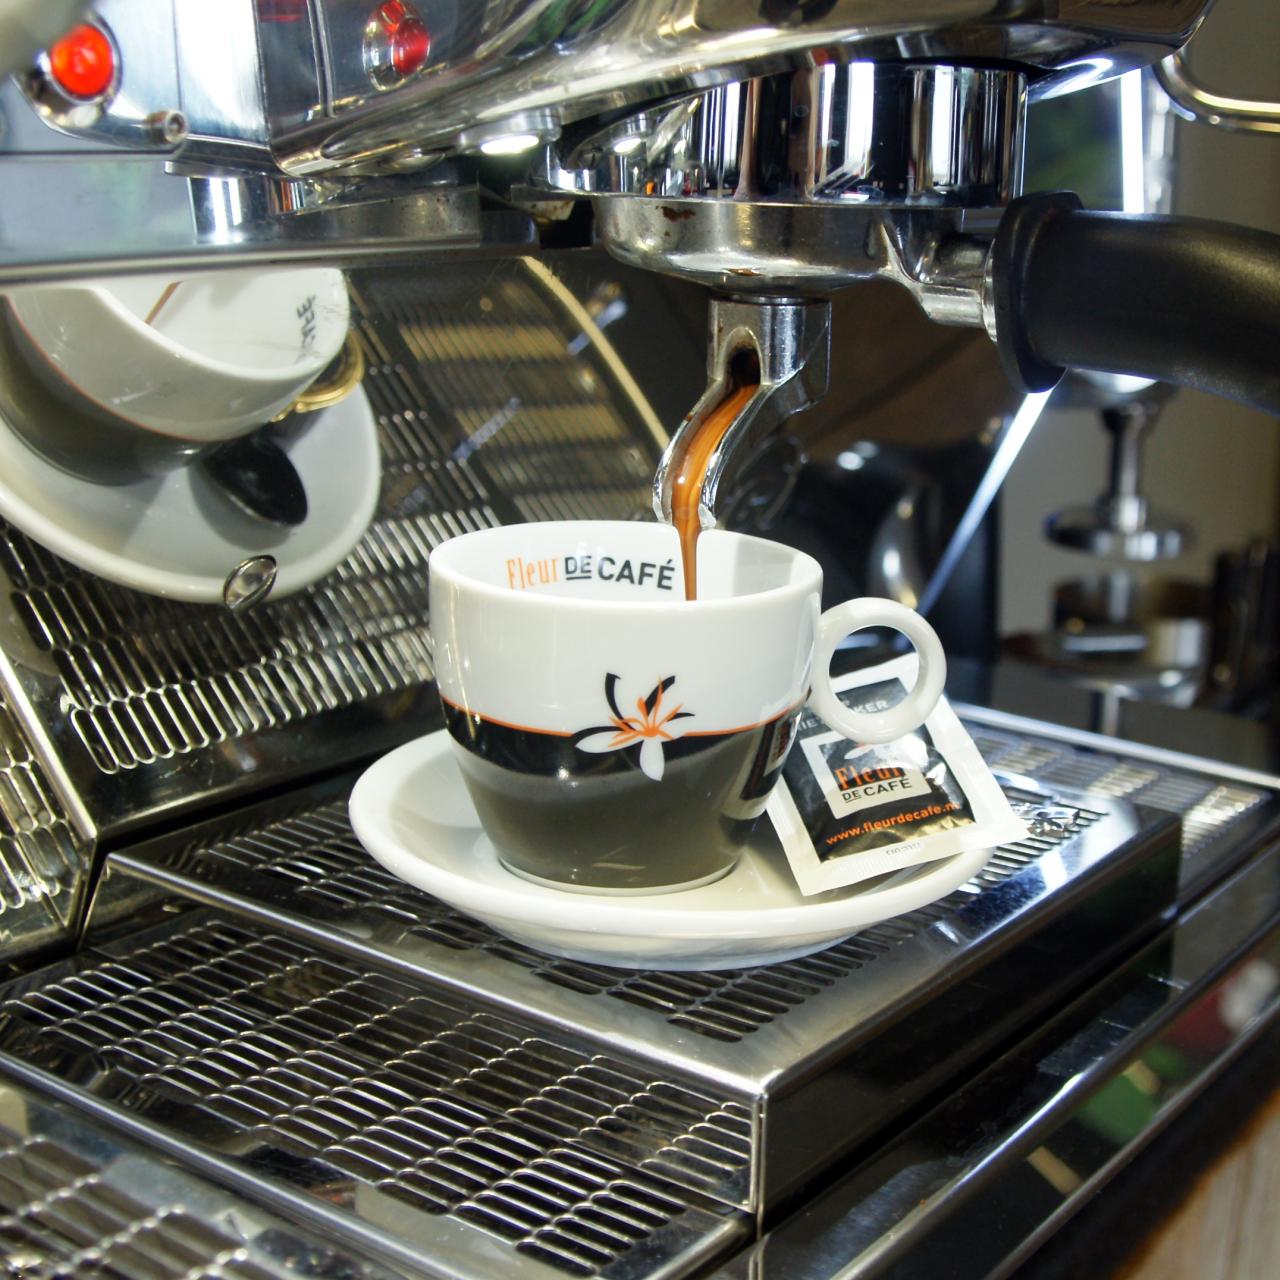 Fleur de cafe koffie uit espressomachine